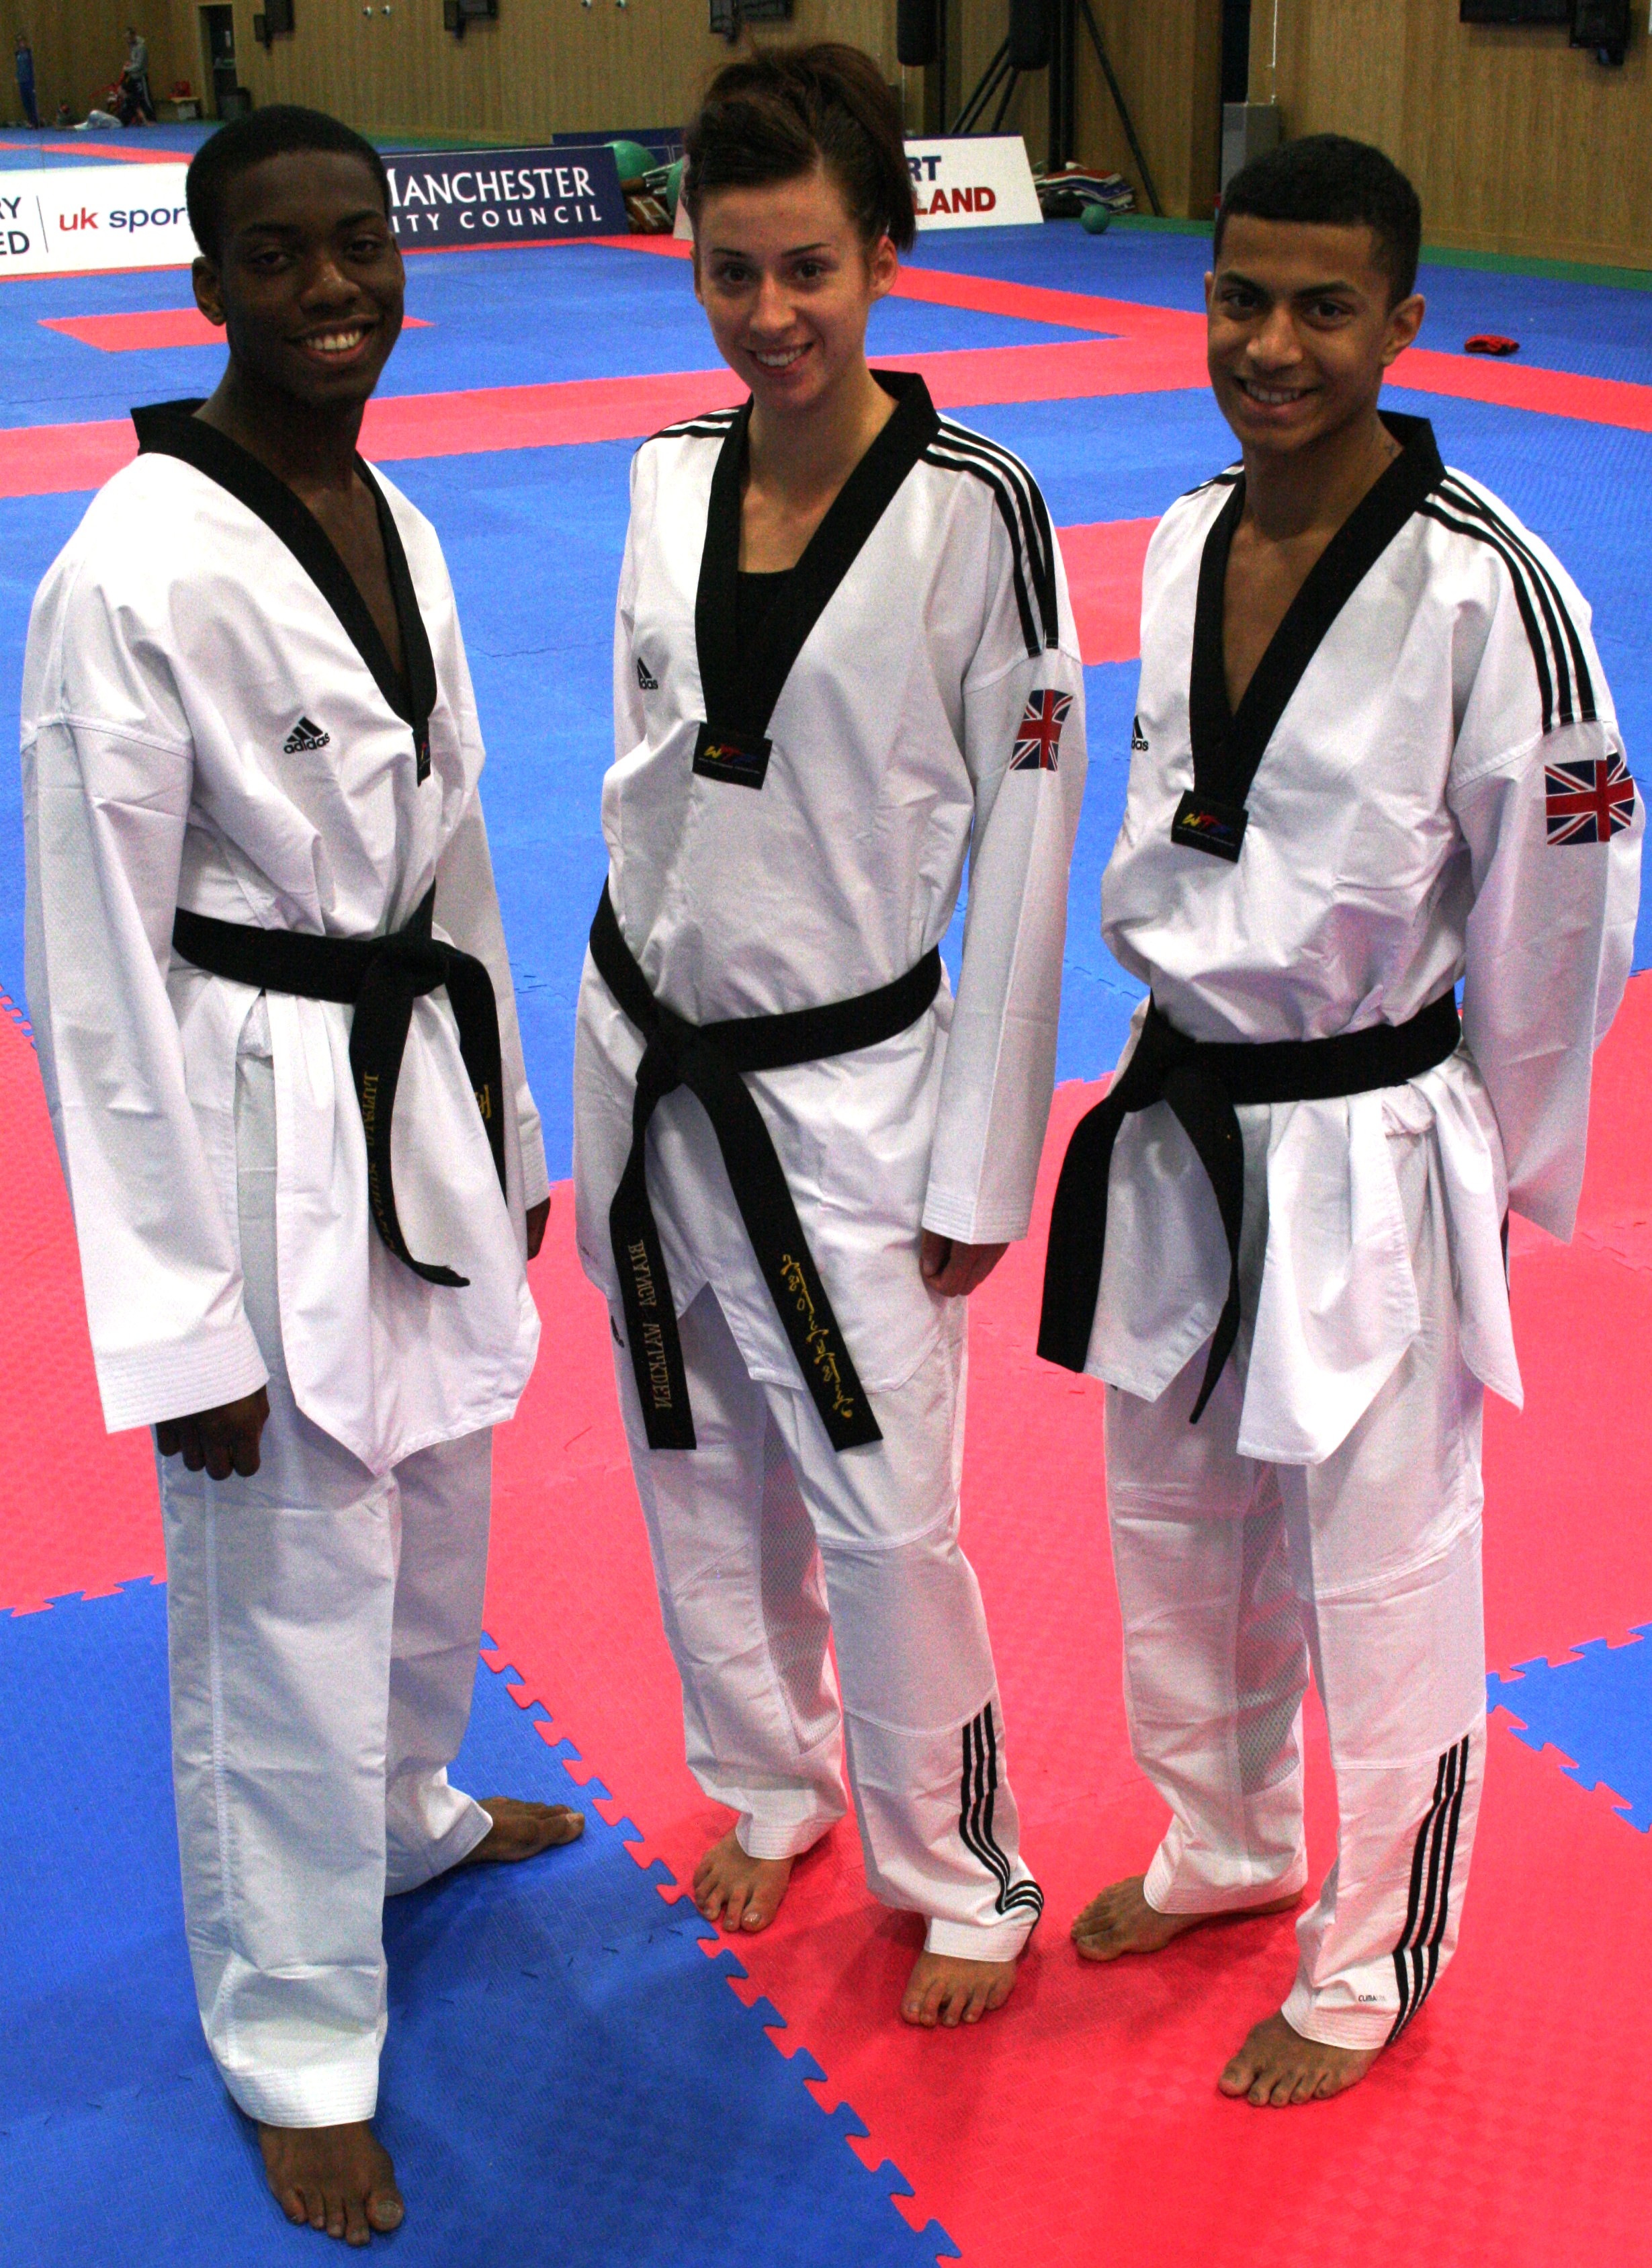 GB_Taekwondo_kit_deal_September_2011